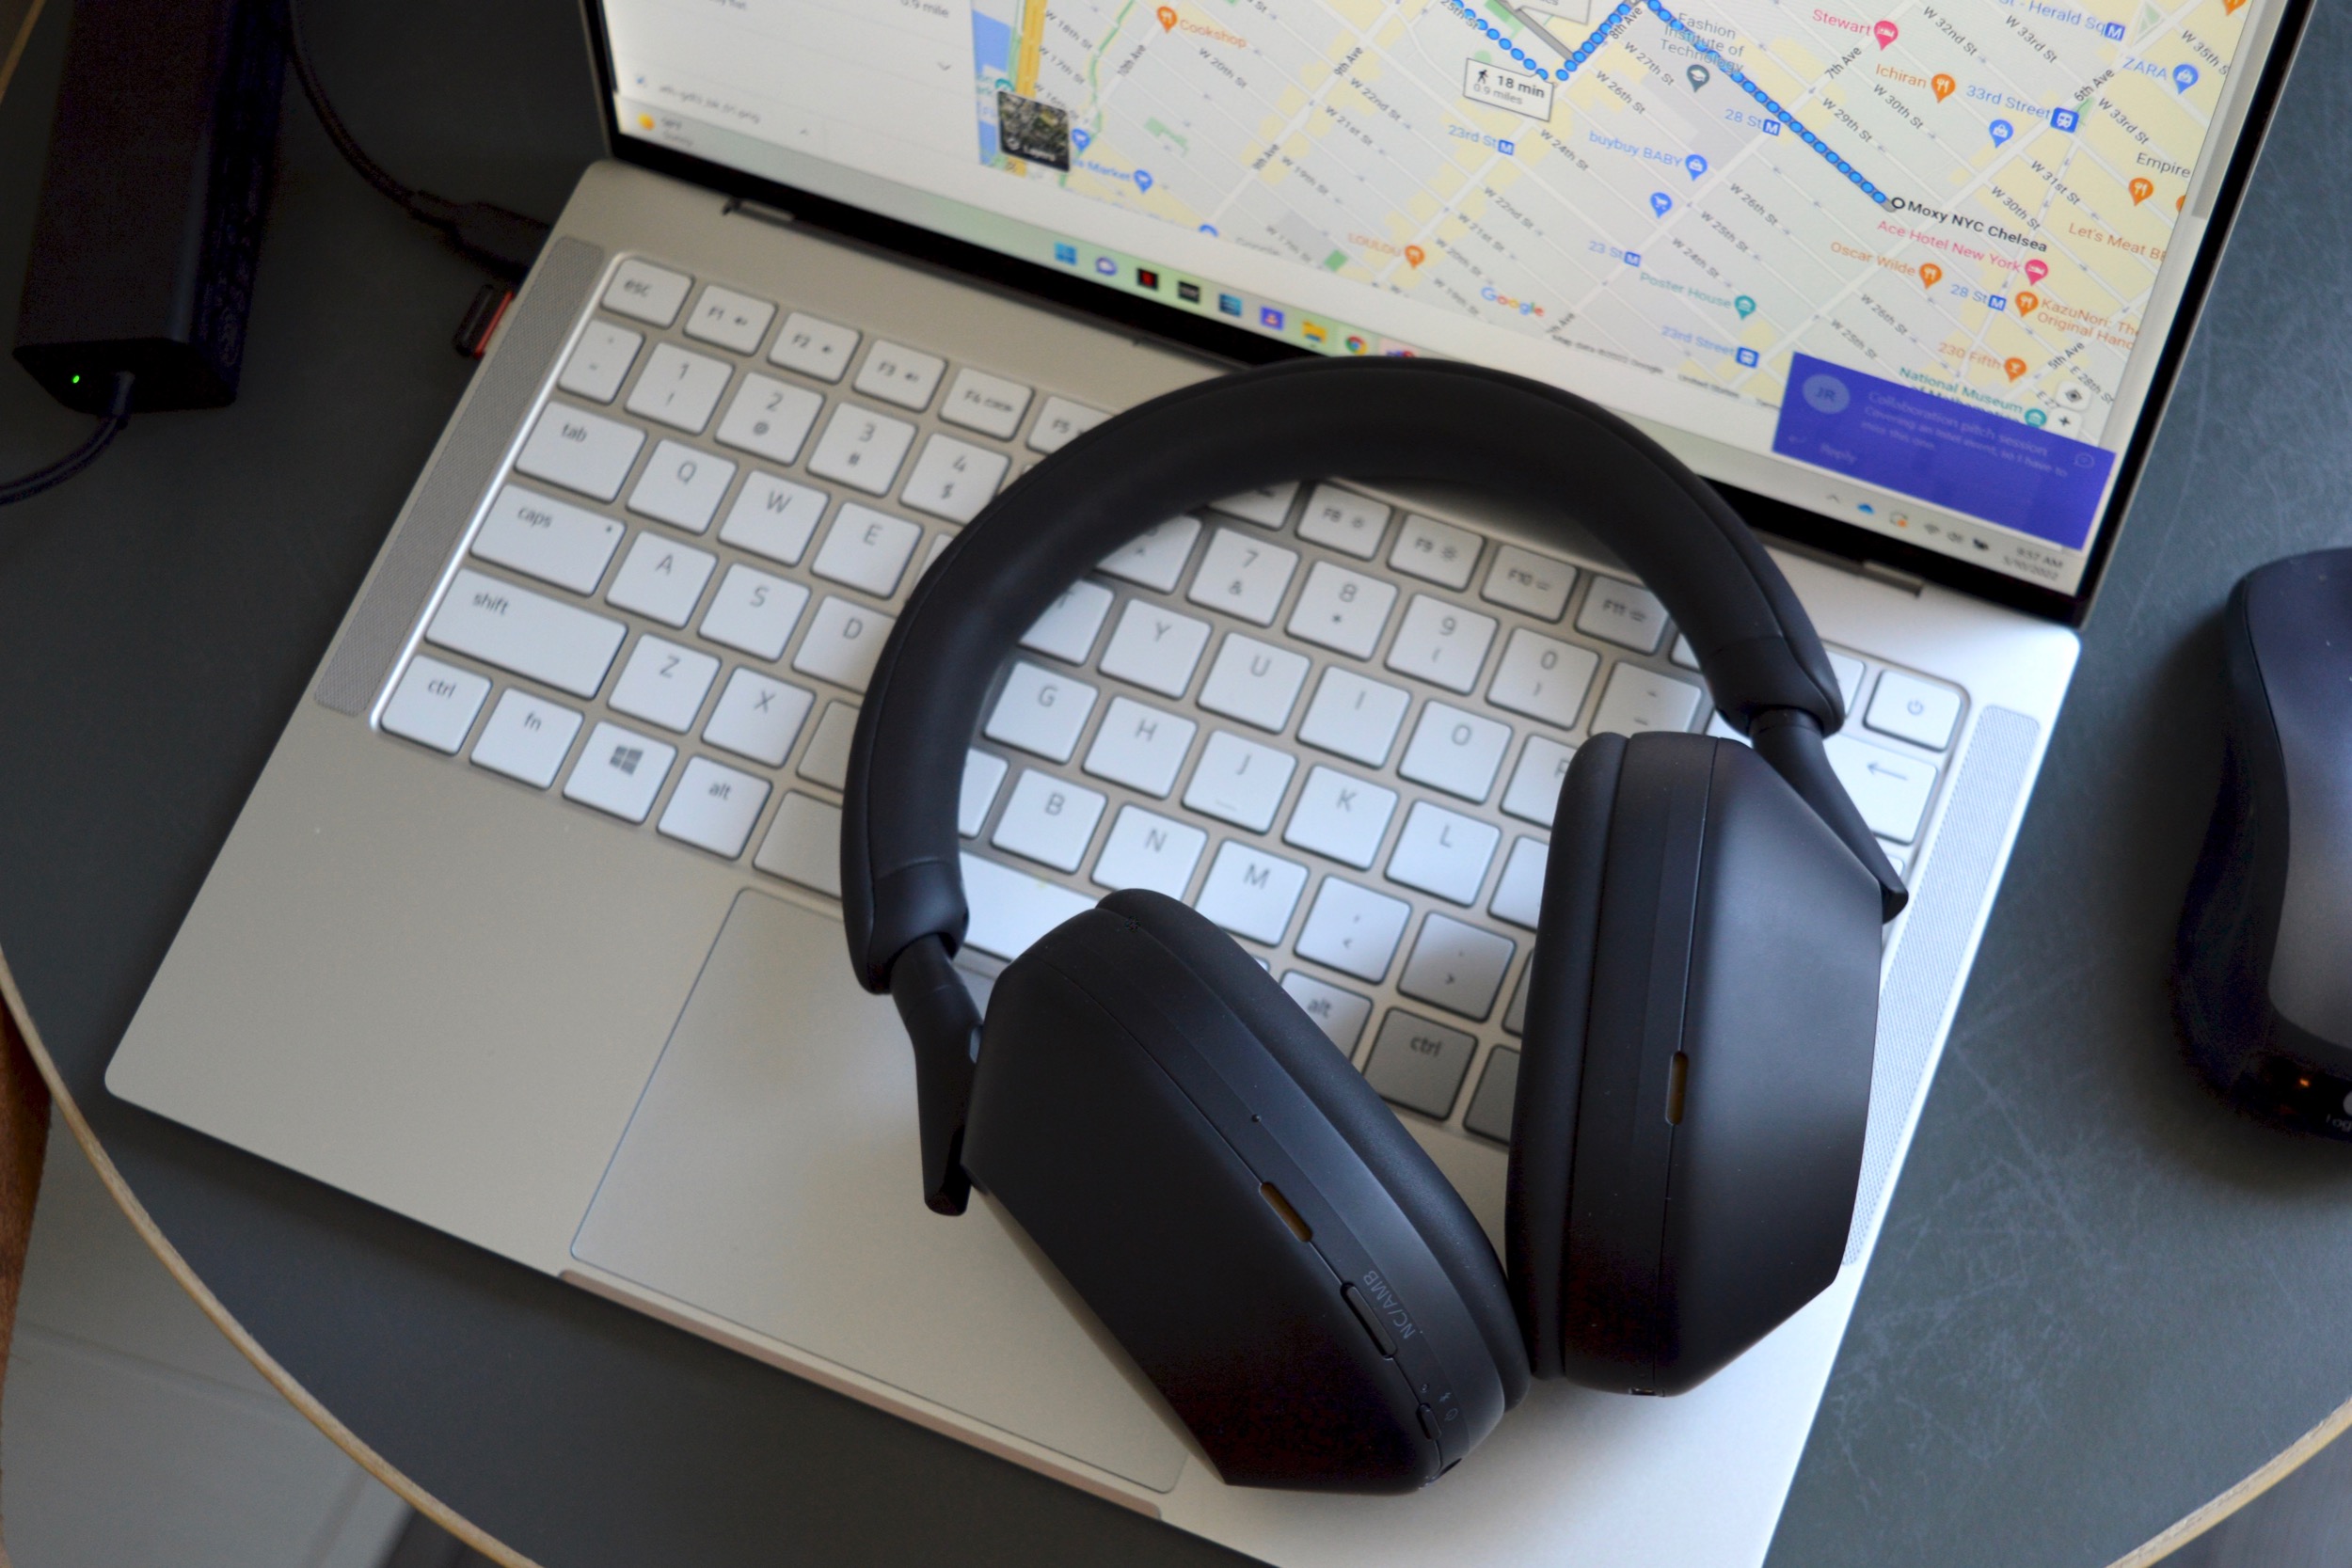 Fones de ouvido sem fio Sony WH-1000XM5 sobre o teclado de um laptop.